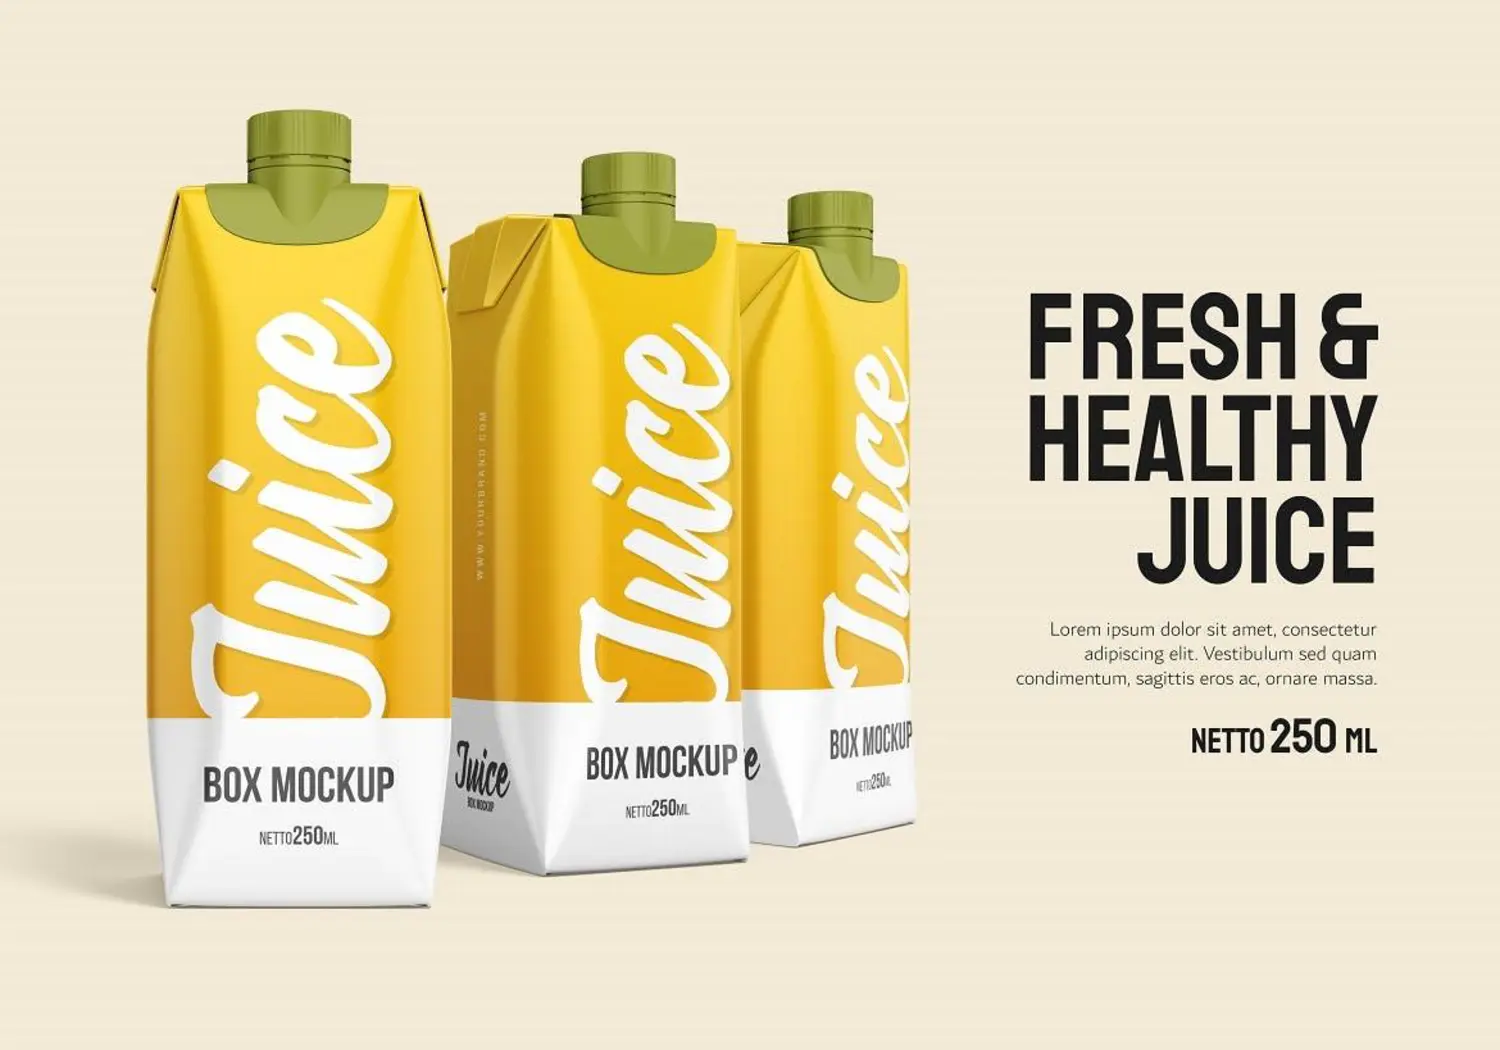 33 果汁盒瓶牛奶纸盒品牌包装设计样机v2 Juice Box – Mockup Vol